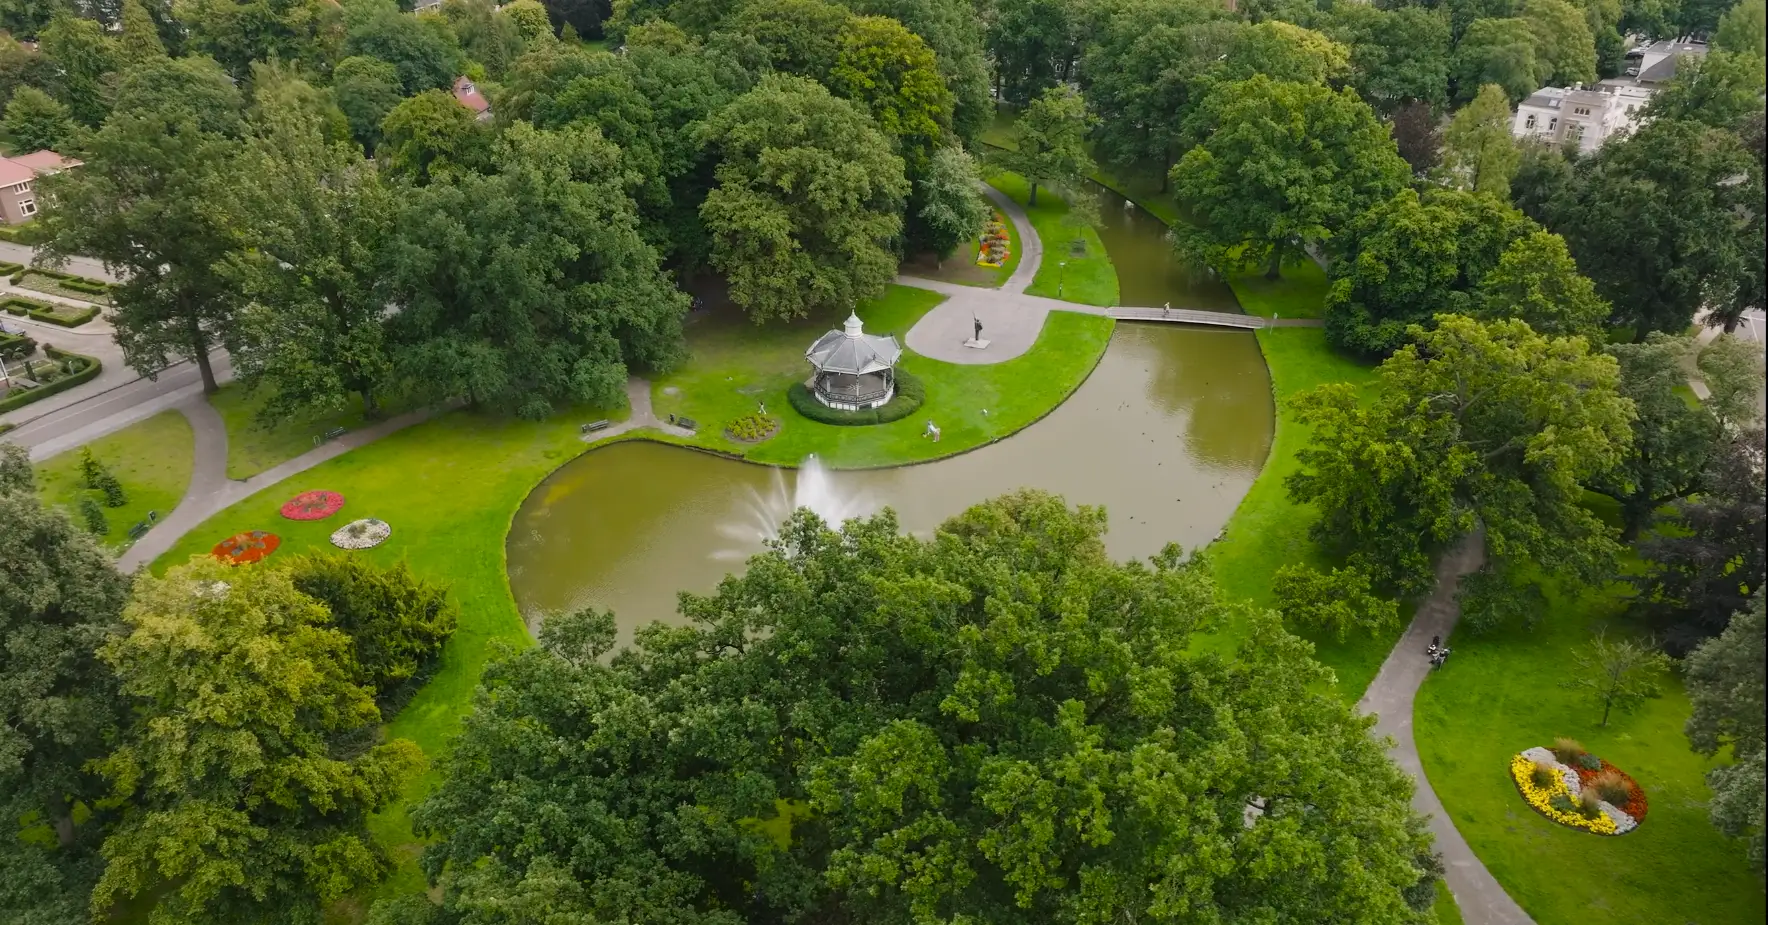 Mooiste stadsparken van Apeldoorn